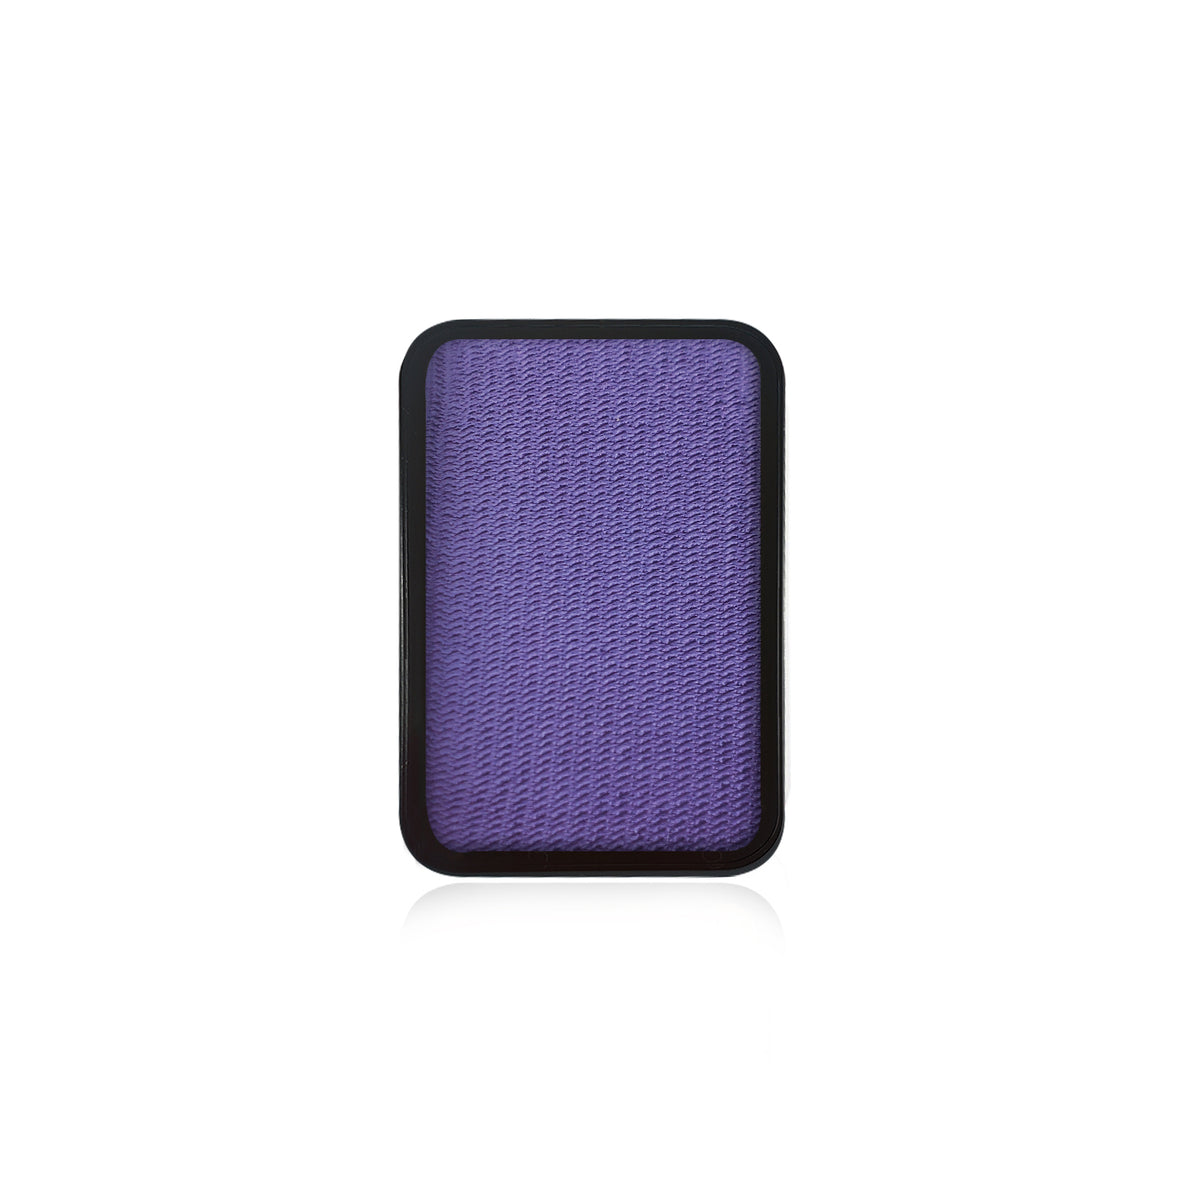 Kraze Face Paint Palette Refill - Purple (0.35 oz/10 gm)